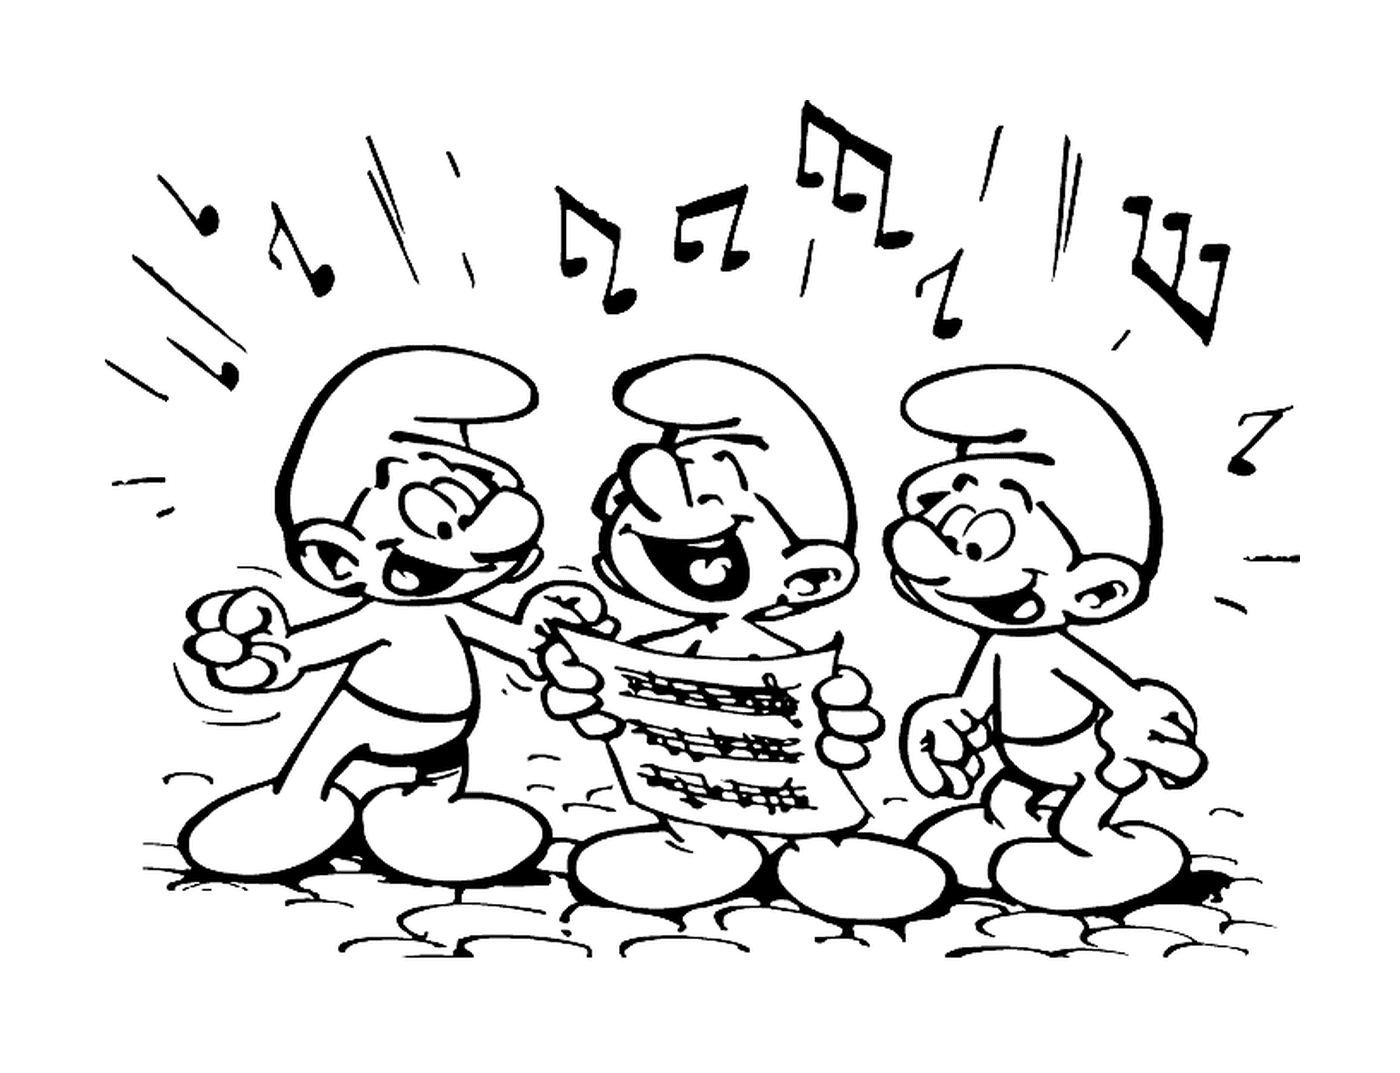  Tres pitufos cantan armoniosamente 